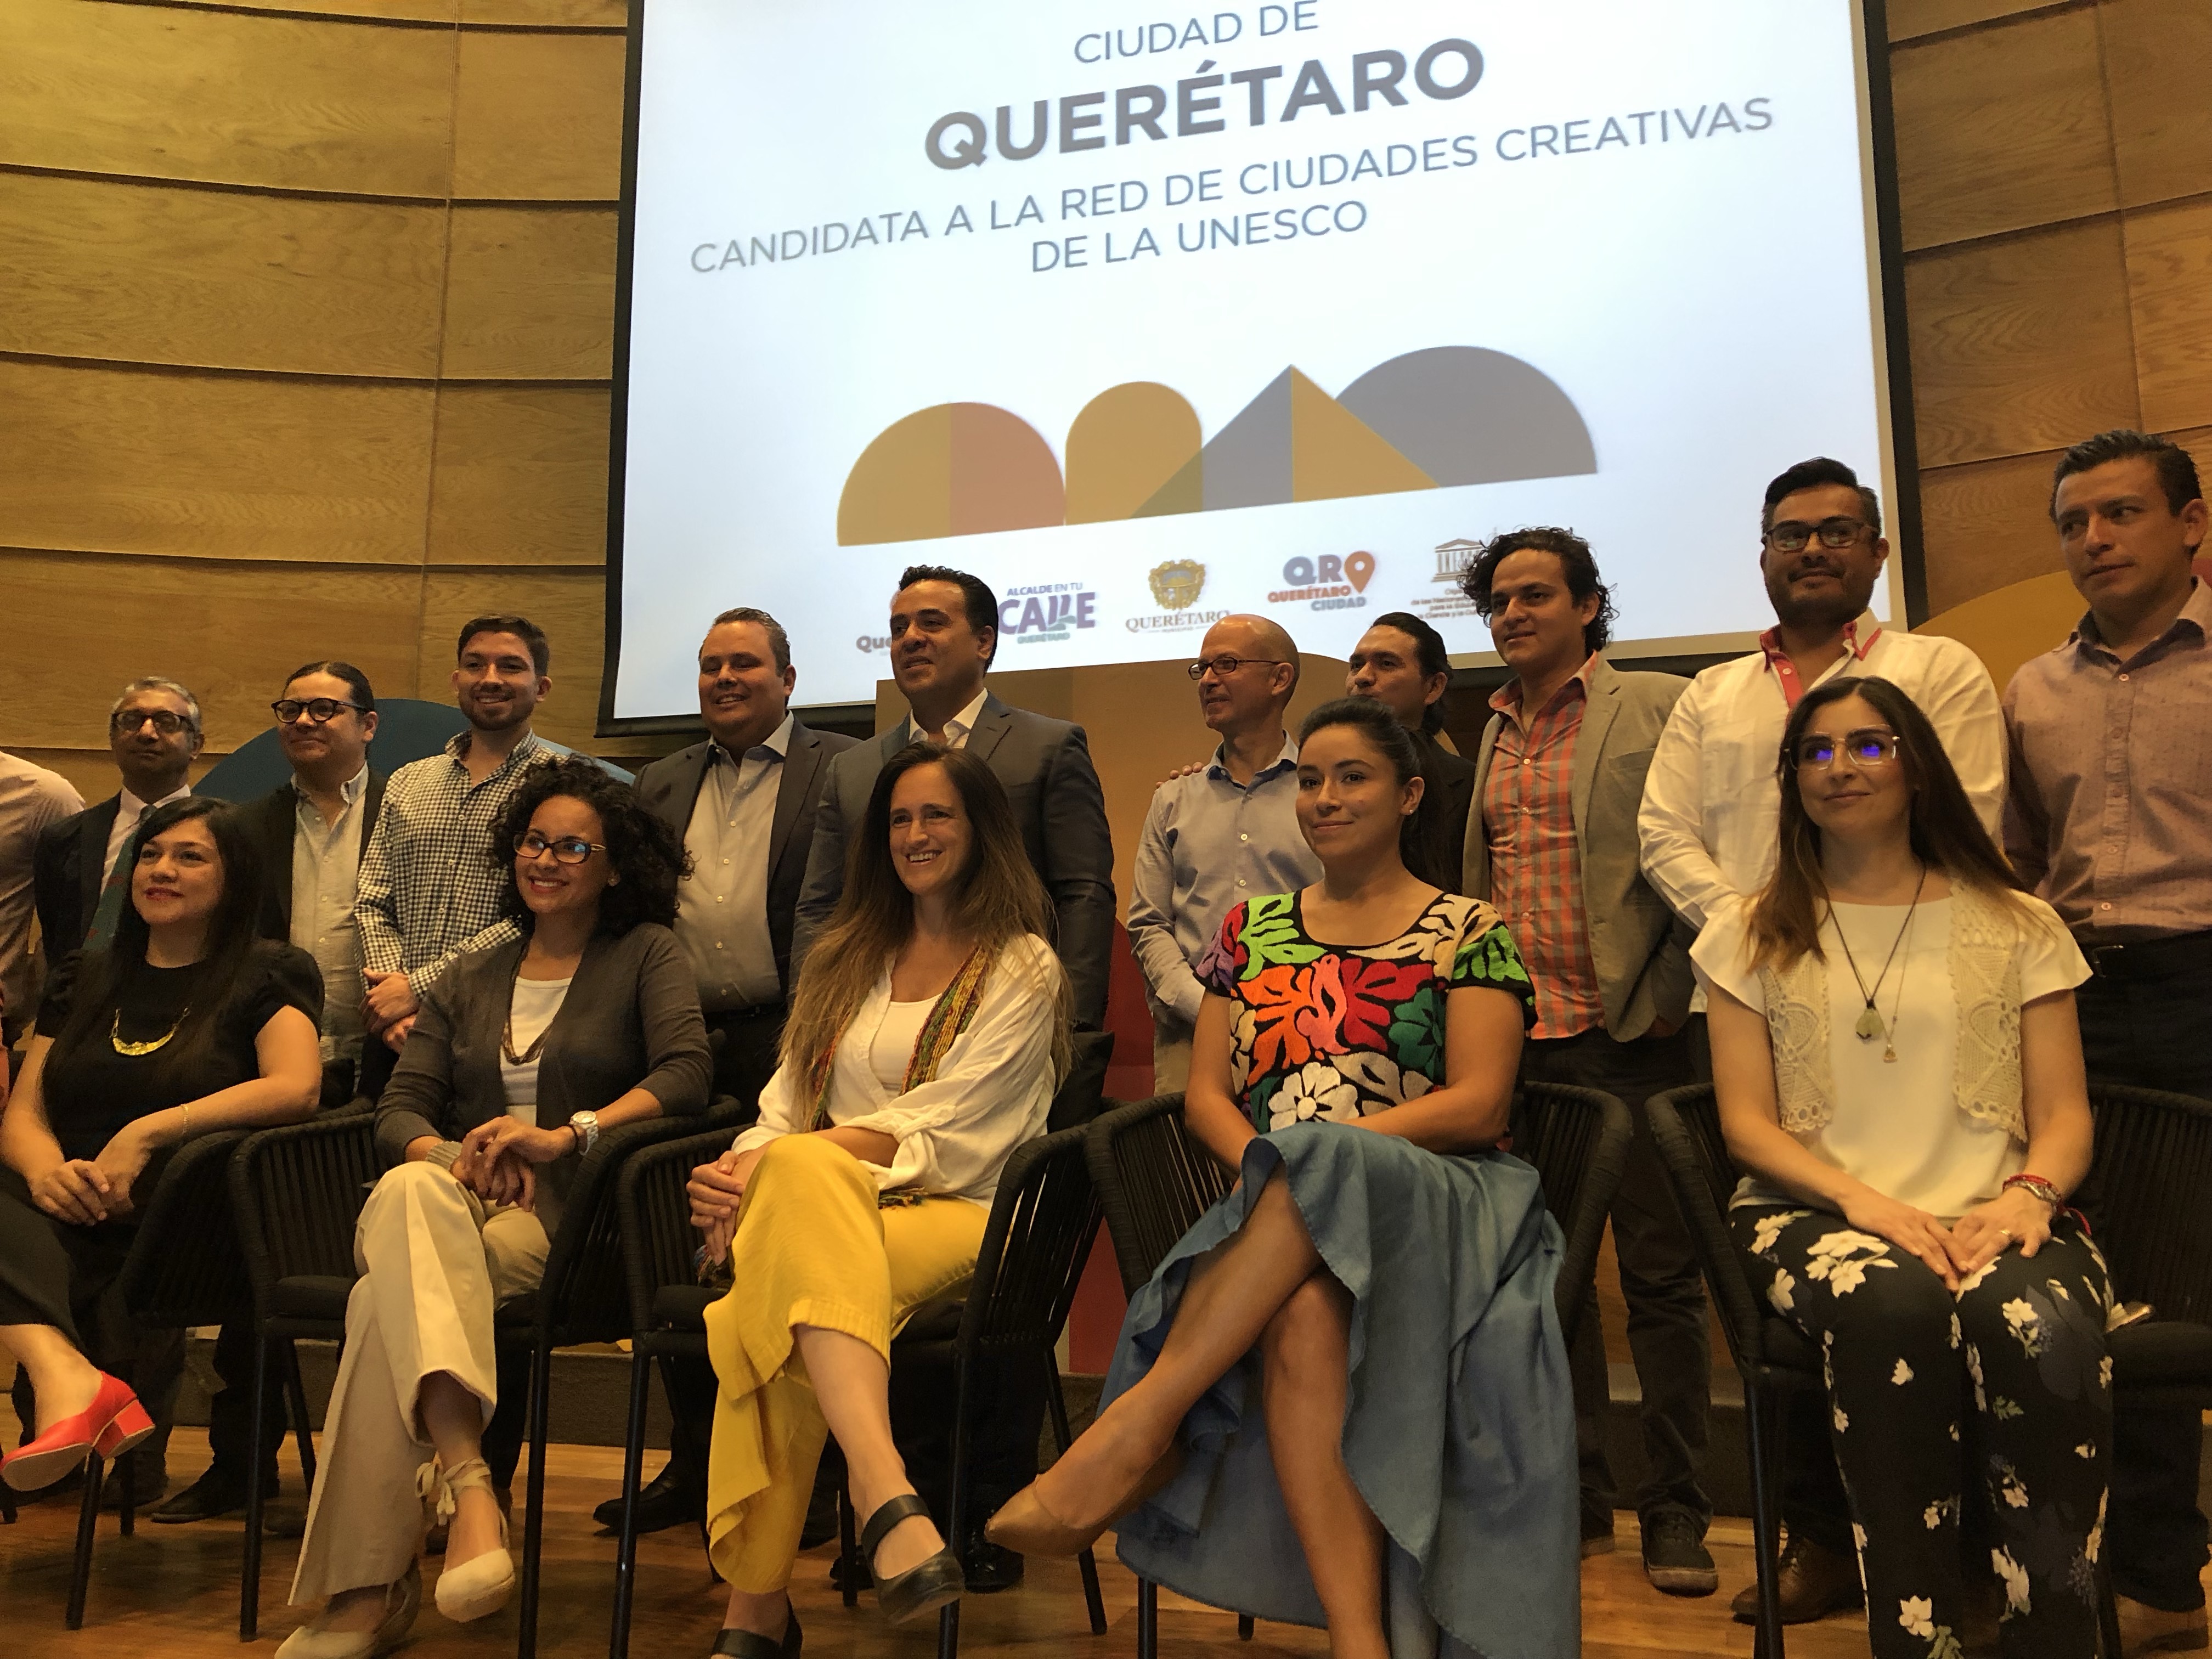  Querétaro conforma consejo por candidatura a la Red de Ciudades Creativas de la UNESCO